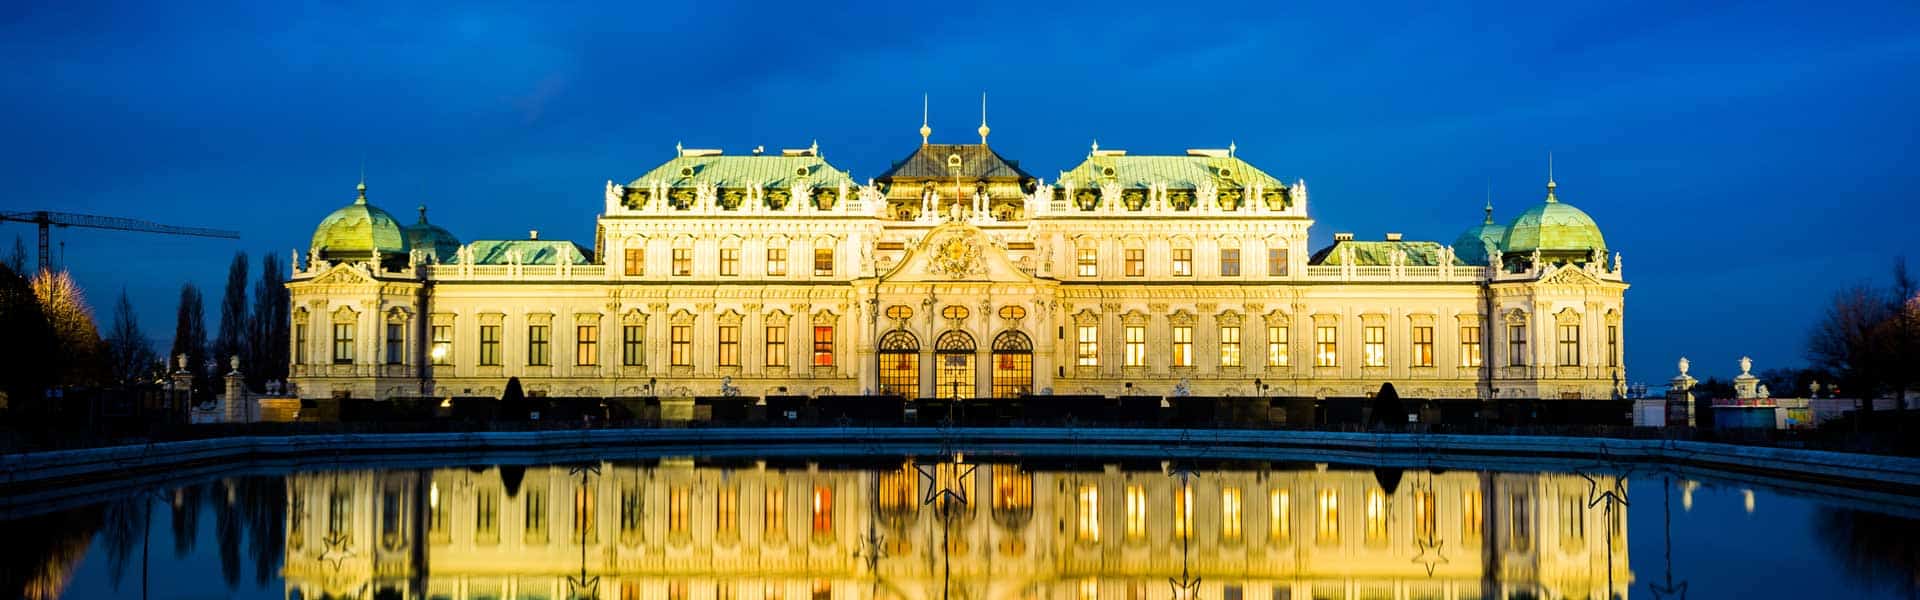 Bei schöner Aussicht Kunst und Geschichte erleben: Das Schloss Belvedere in Wien